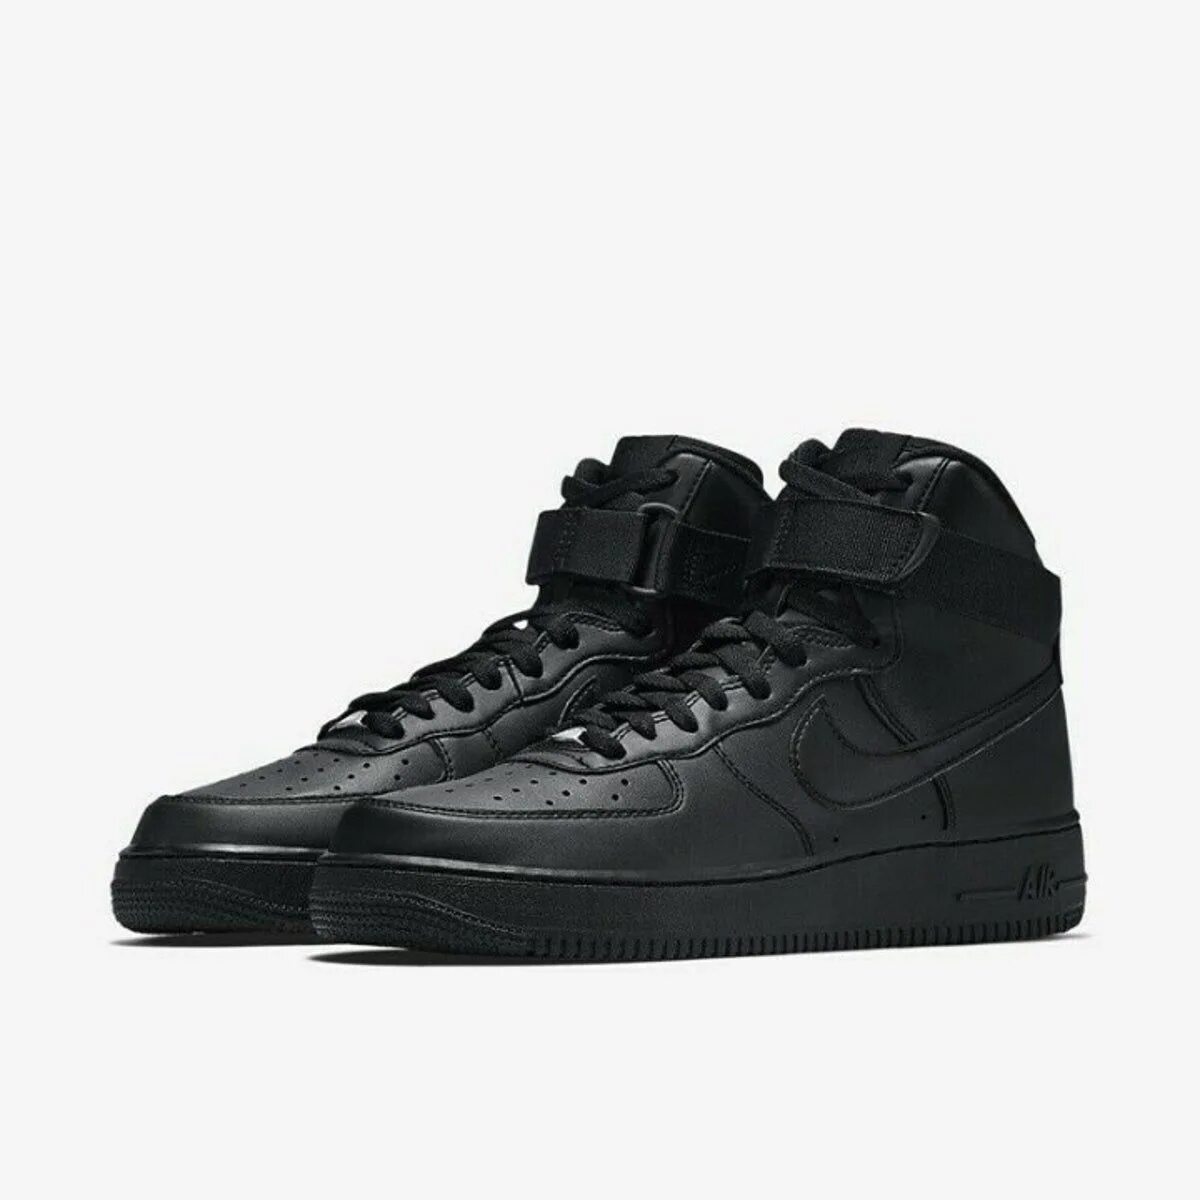 Nike Air Force 1 High Black. Nike Air Force 1 High. Nike Air Force 1 High 07 Black. Nike Air Force 1 High черные.